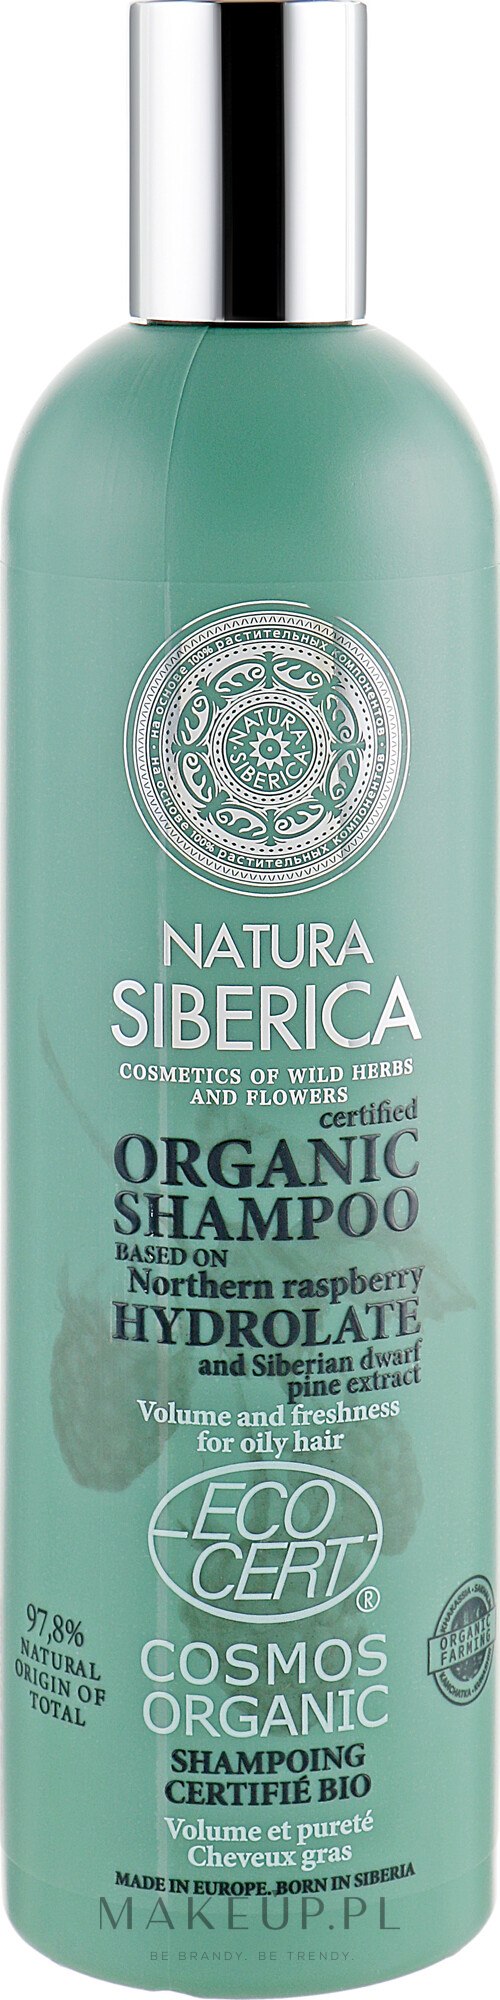 szampon w kostce siberica